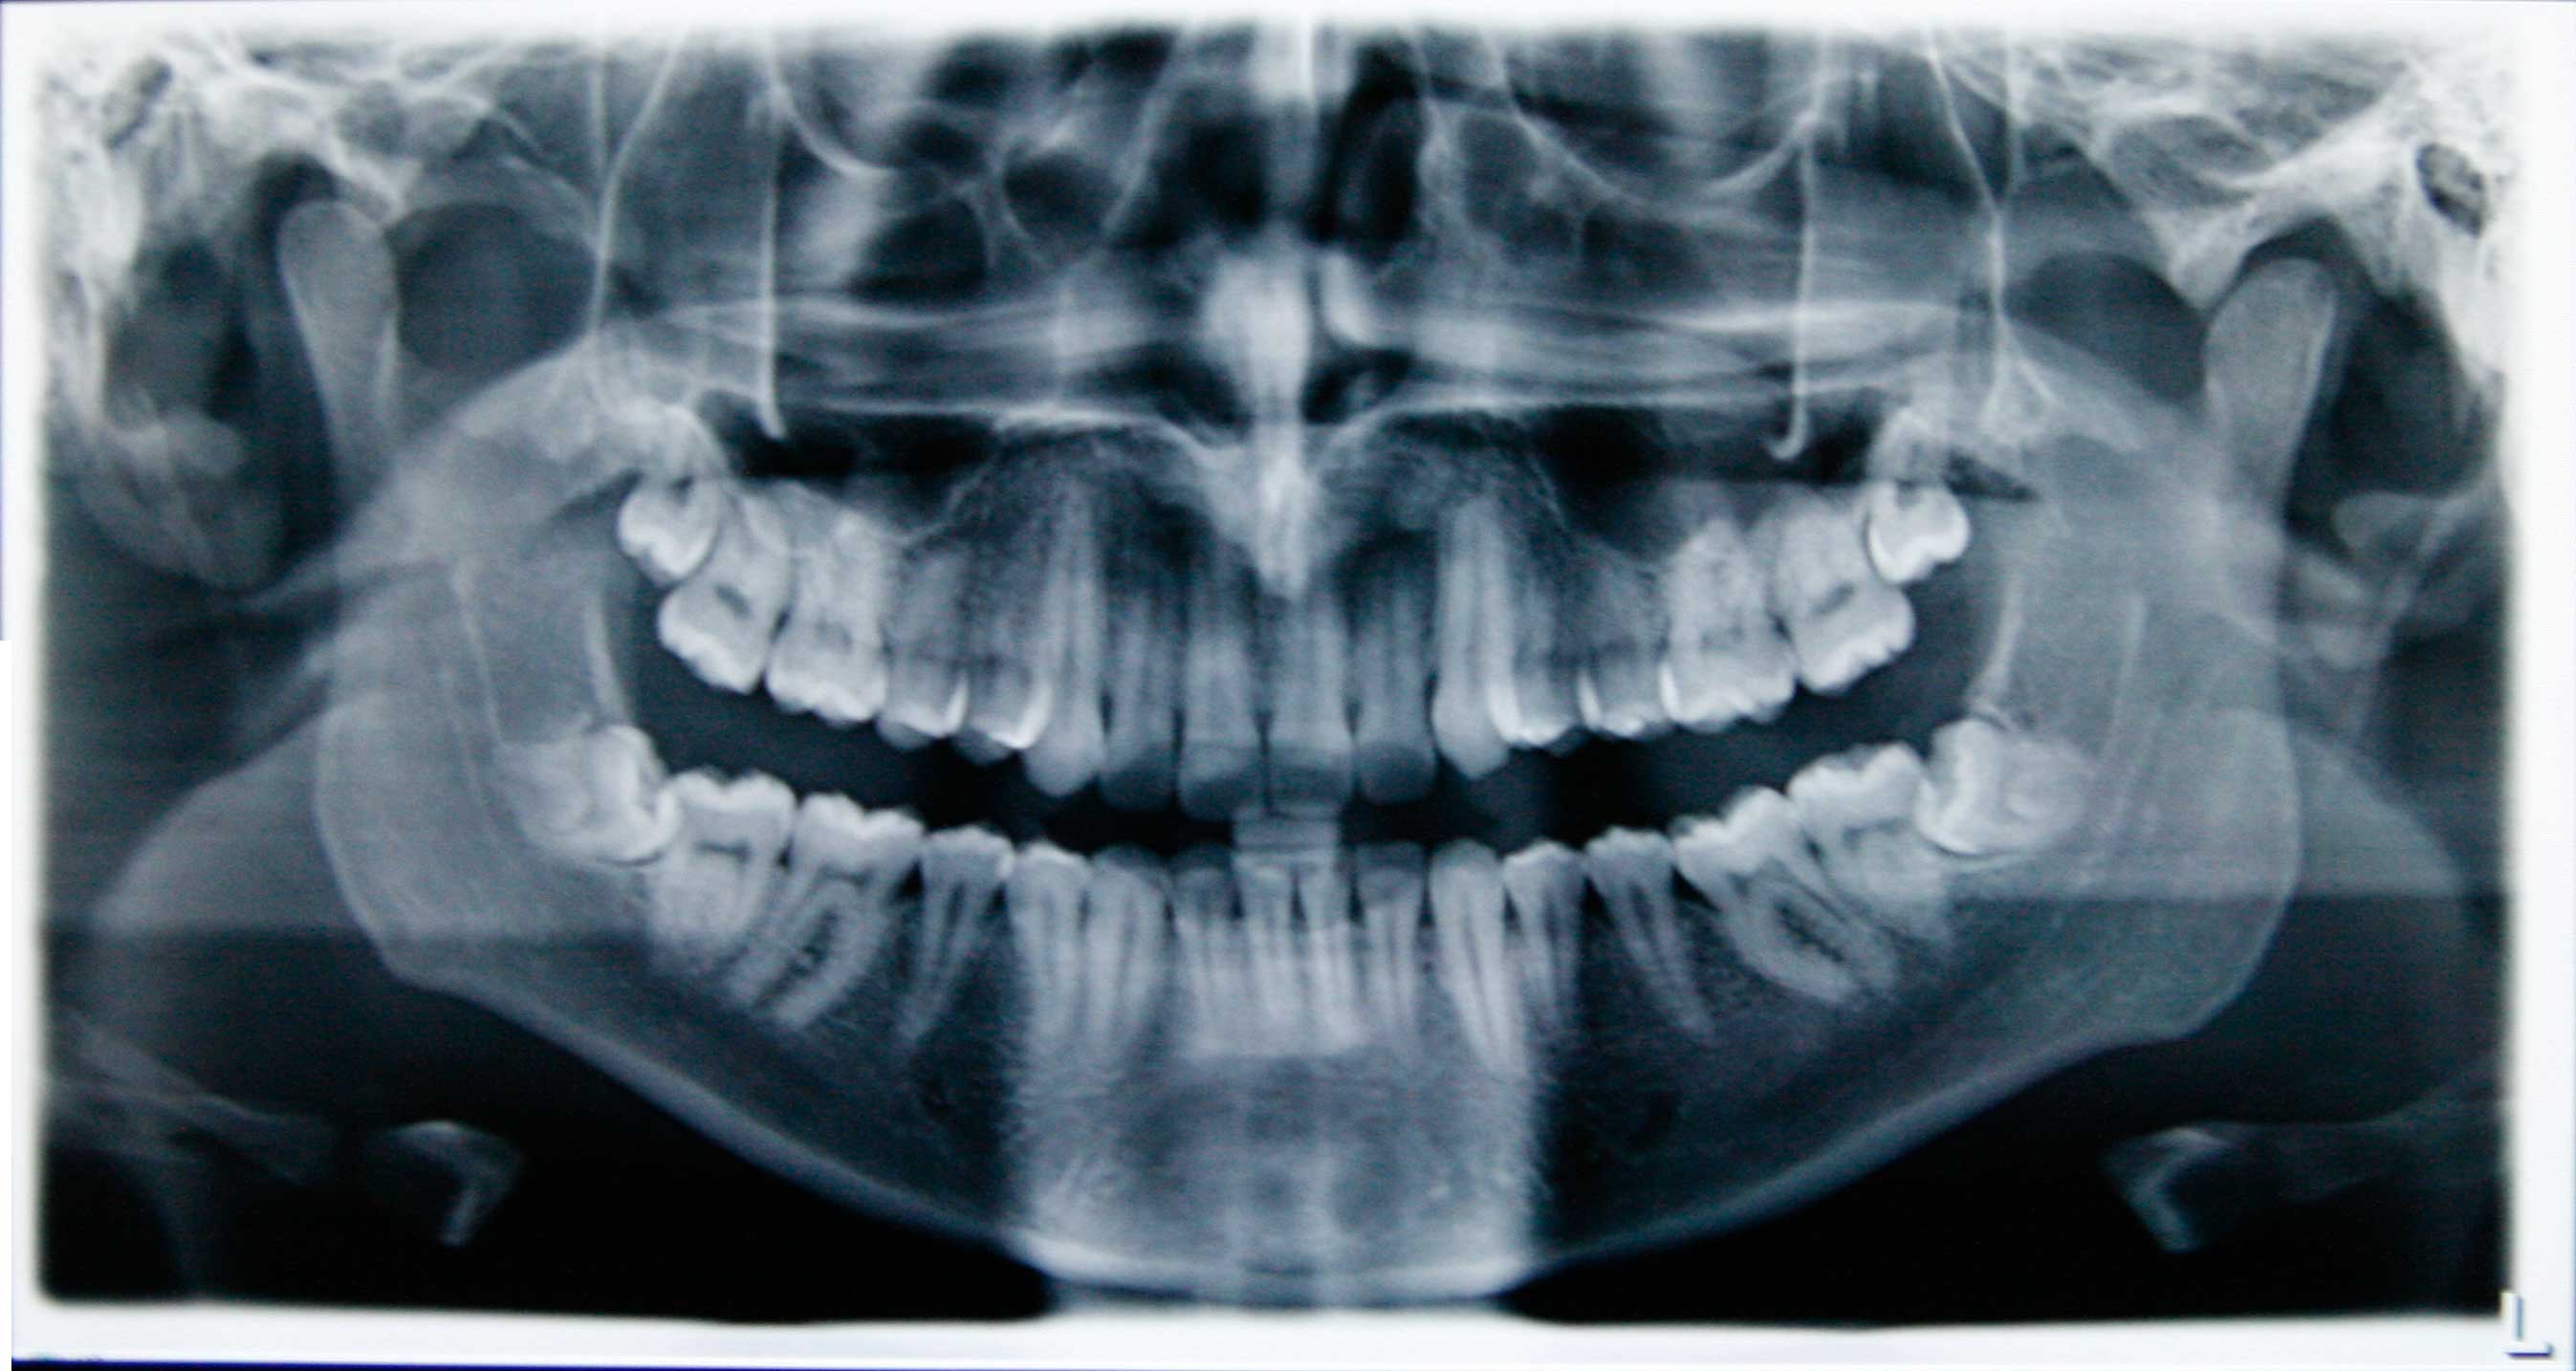 E' possibile che il dolore e l'infiammazione agli incisivi superiori siano causati da un dente del giudizio?